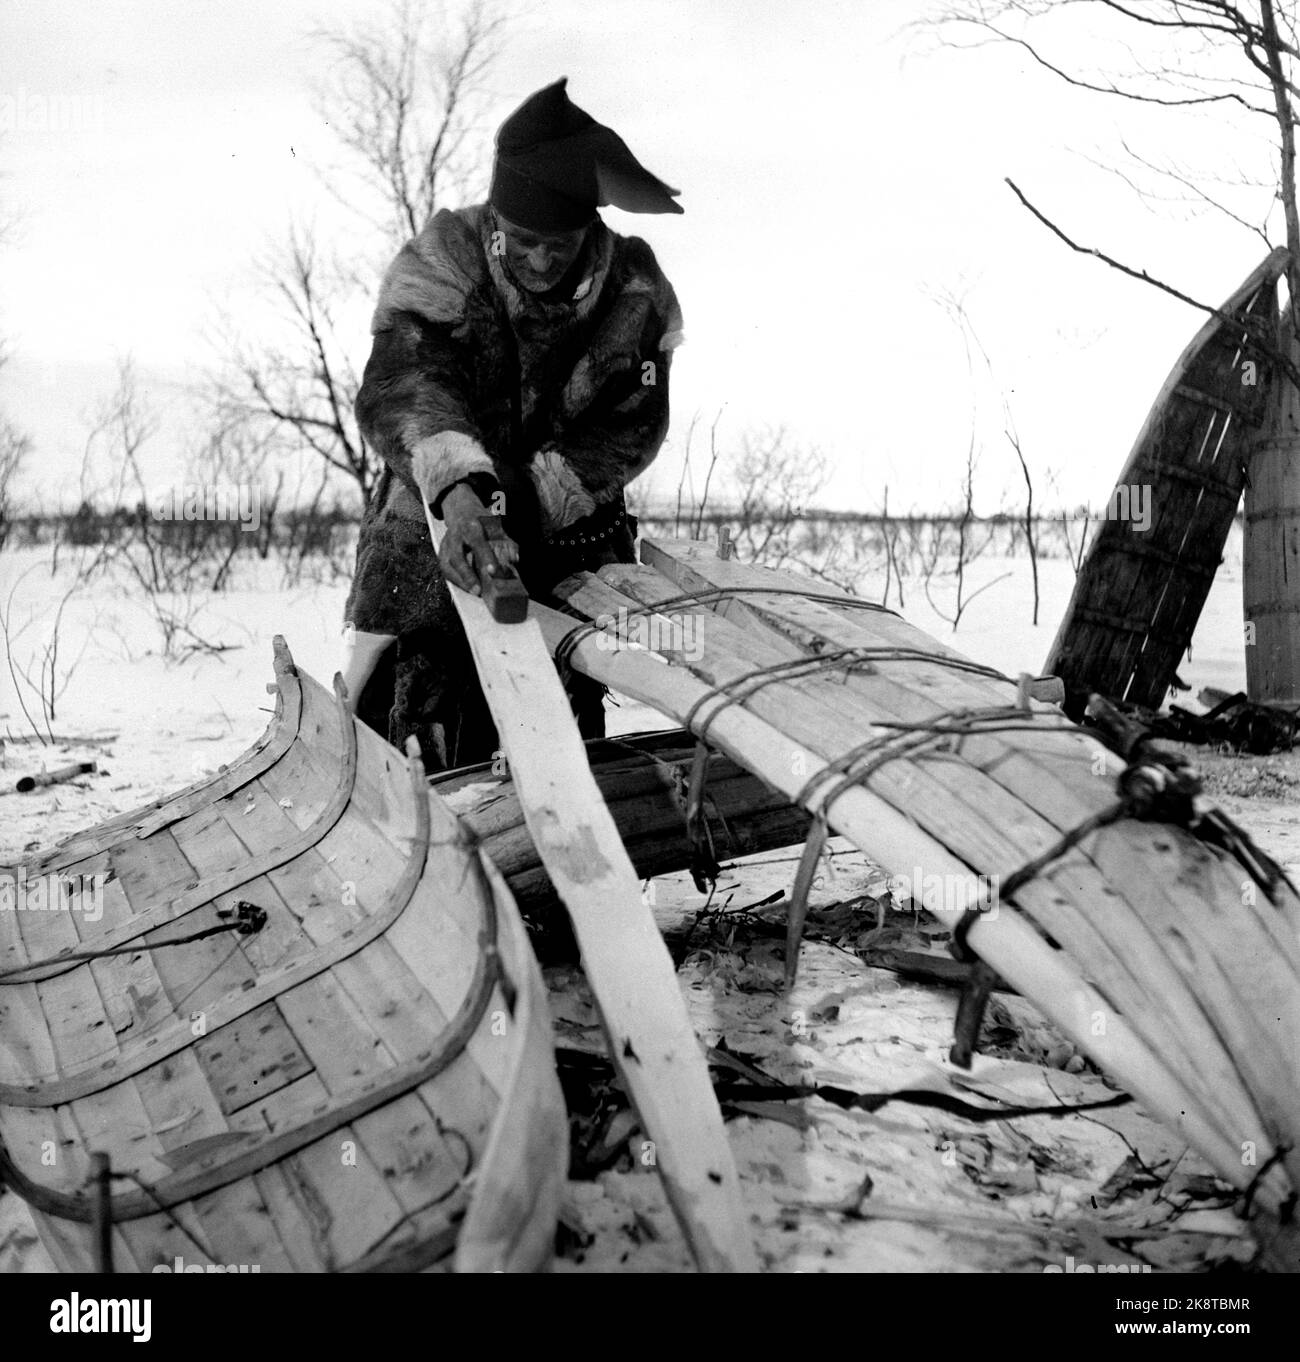 Karasjok 1952. La vita quotidiana dei Sami a Karasjok. Qui vediamo una stessa cosa che fa una barca. Foto: Sverre A. Børretzen / corrente / NTB Foto Stock